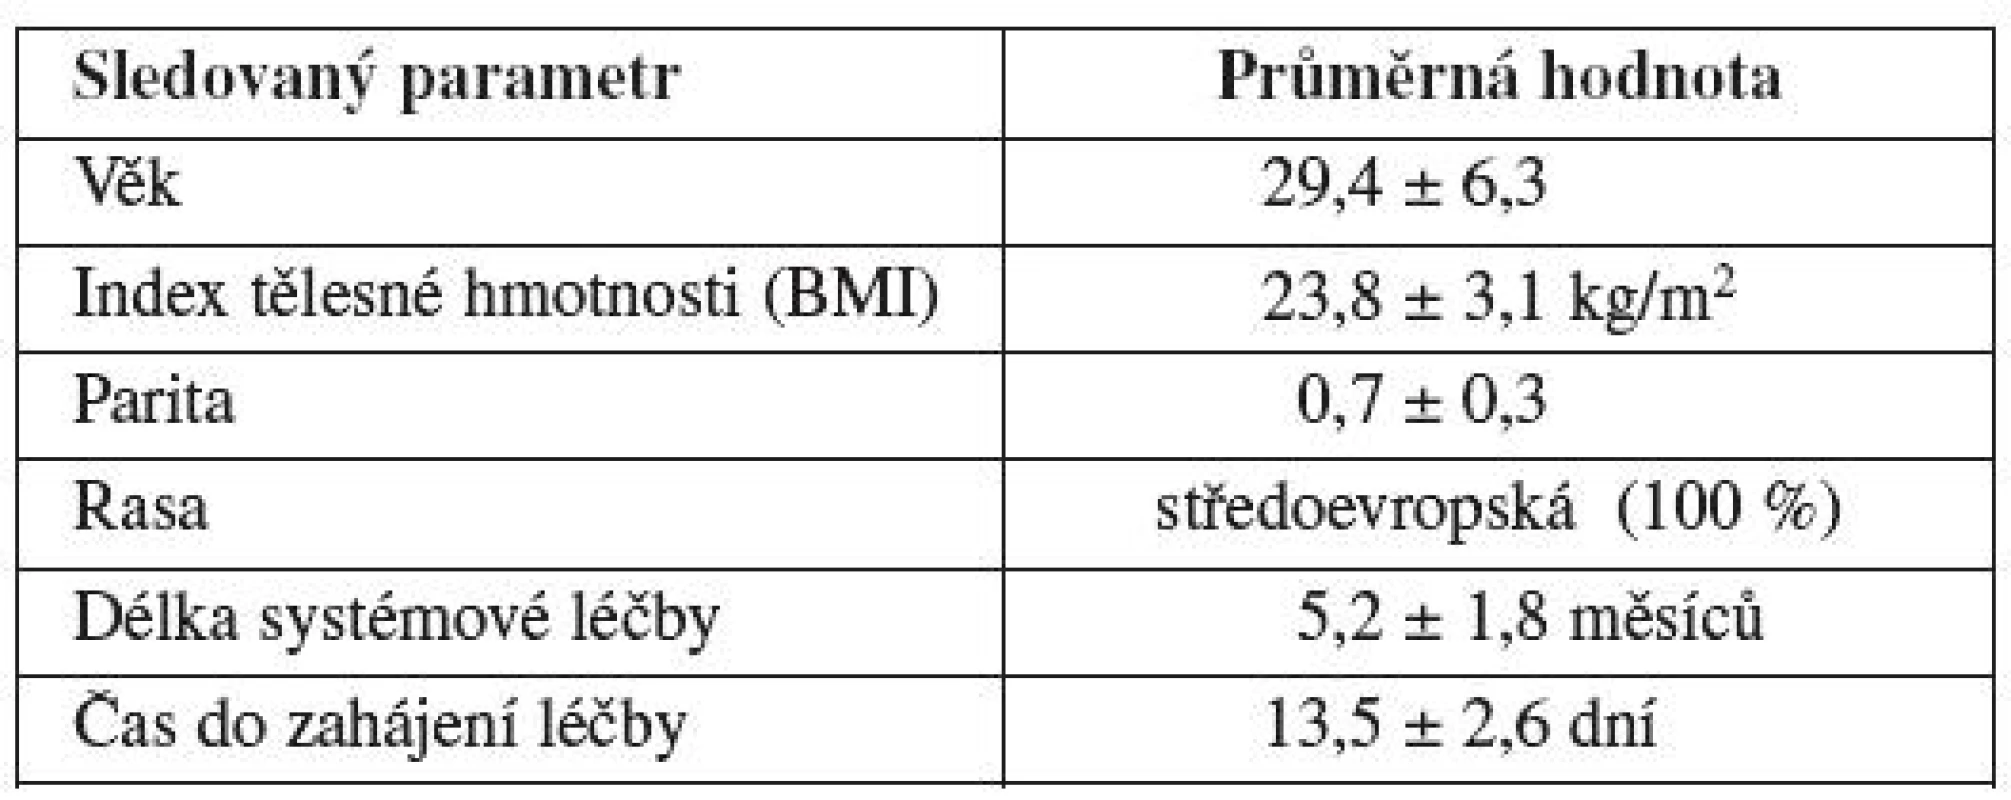 Základní charakteristika pacientek před gonadotoxickou léčbou s nově diagnostikovaným nádorovým či autoimunitním onemocněním (Gynekologicko-porodnická klinika LF MU a FN Brno, 2004 – 2010)